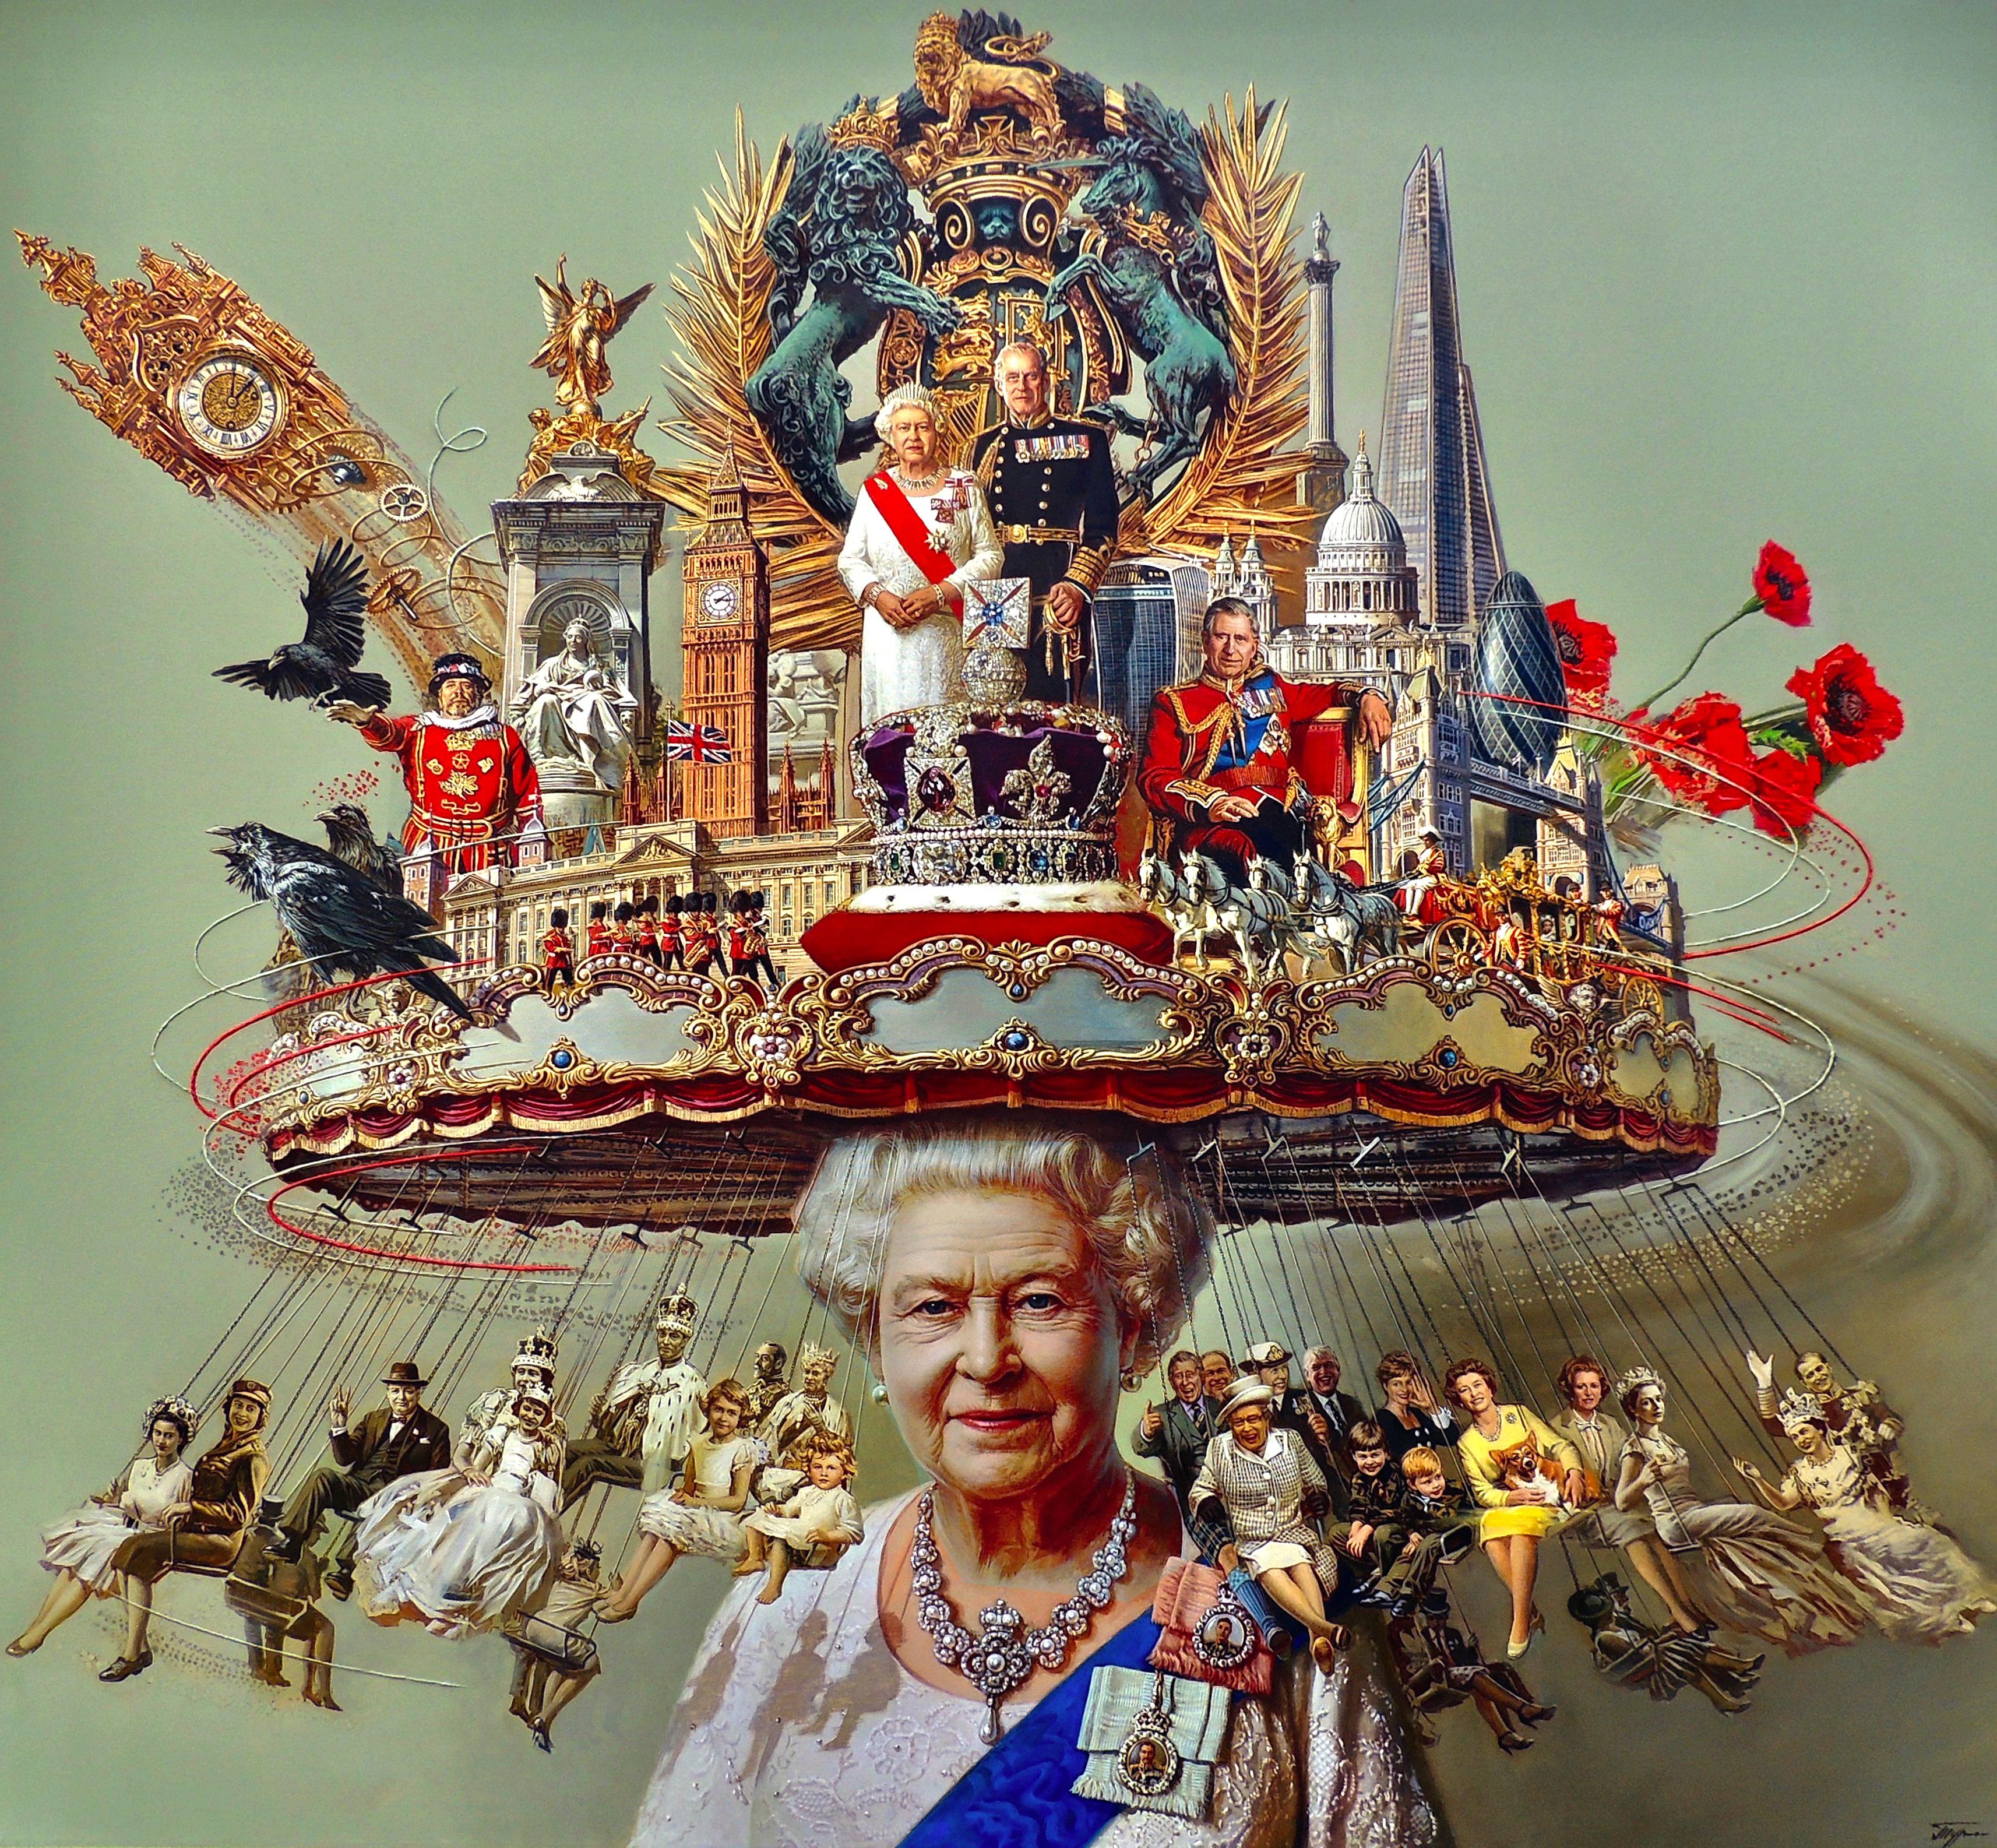 "Le chapeau d'Elizabeth" par Oleg Turchin est une huile sur toile originale de surréalisme figuratif mesurant 58x63 in. Cette peinture représente la vie de feu la Reine Elizabeth. La reine est magnifiquement représentée avec son collier de diamants